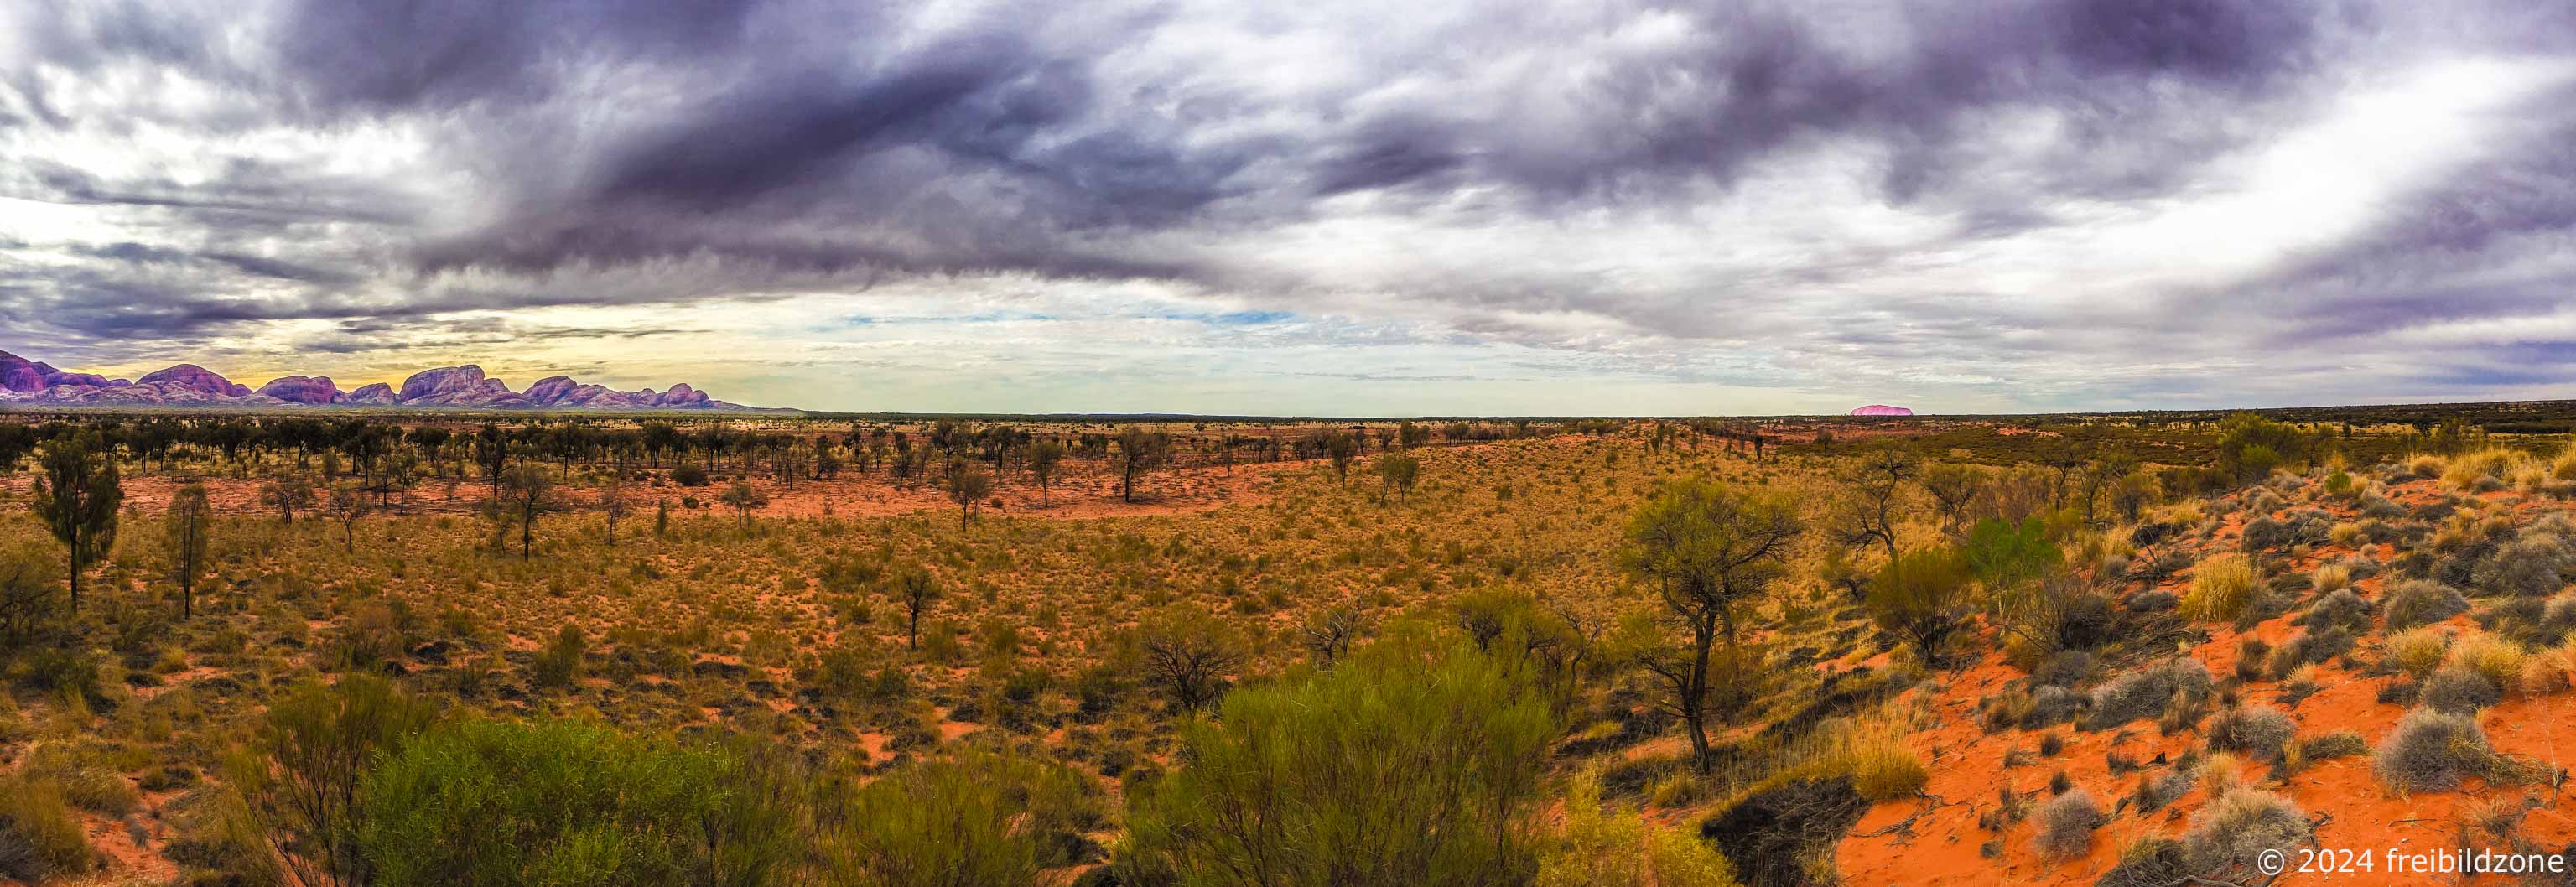 Olgas and Uluru, Australia